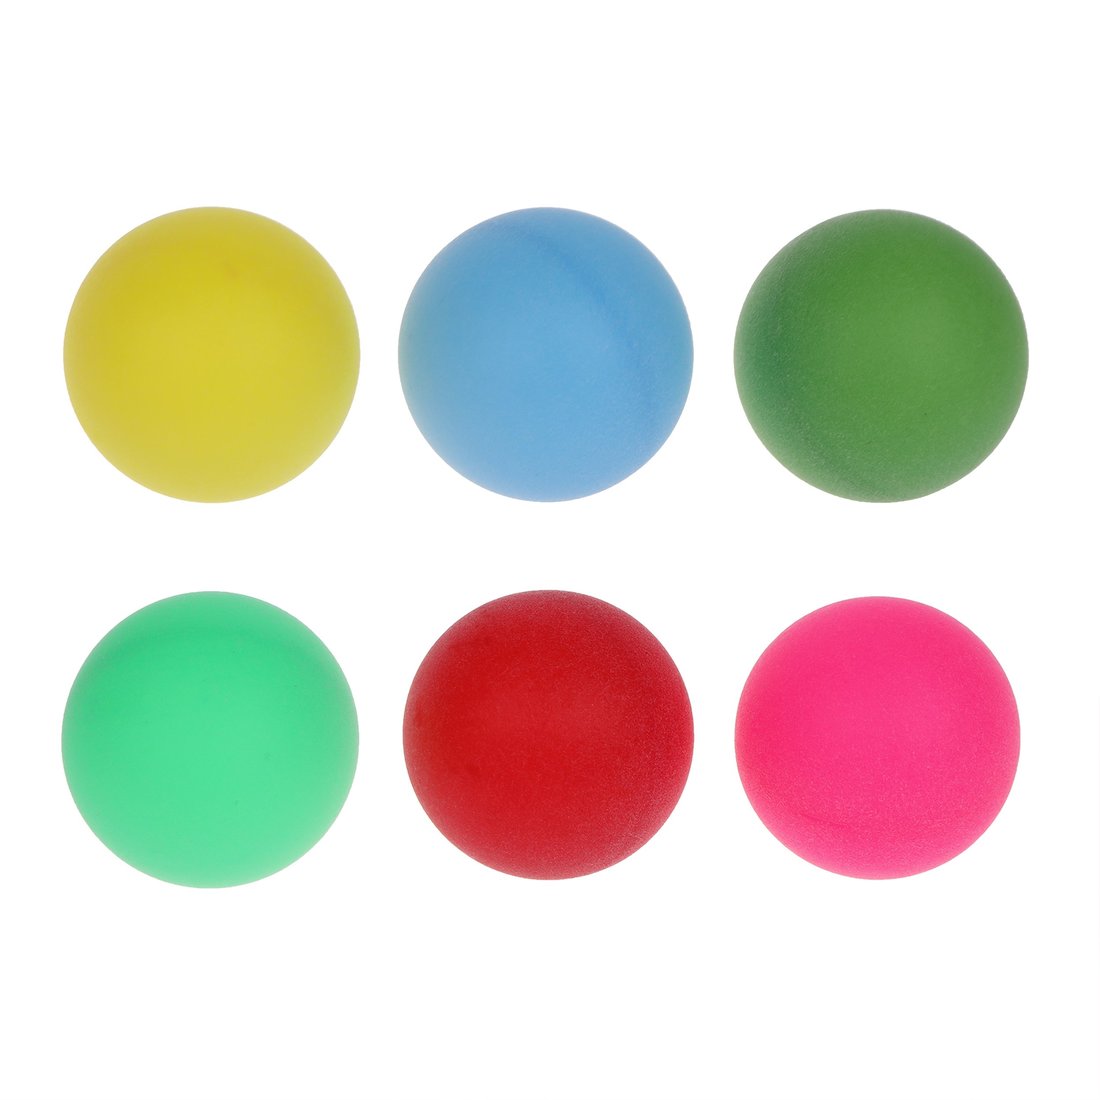 Шарики для настольного тенниса 636179 цветные в наборе 6шт в пакете - Нижнекамск 